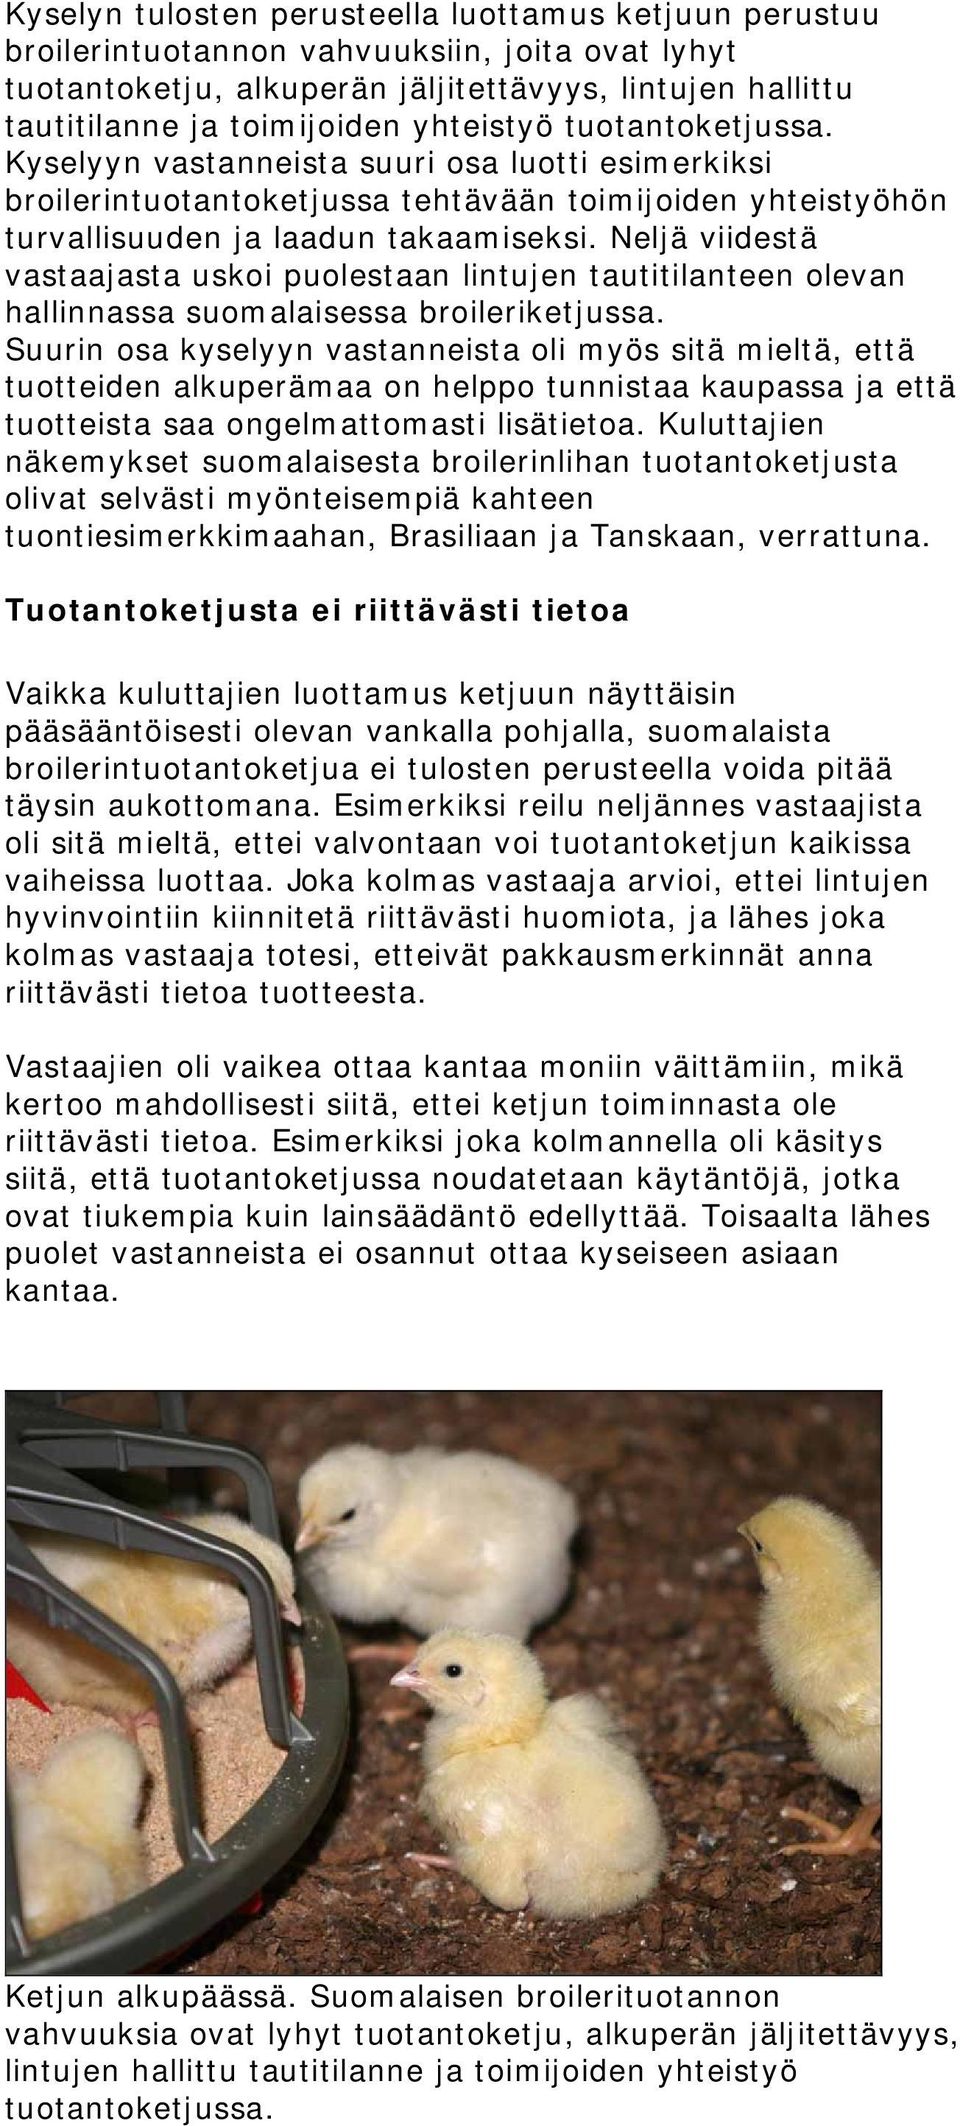 Neljä viidestä vastaajasta uskoi puolestaan lintujen tautitilanteen olevan hallinnassa suomalaisessa broileriketjussa.